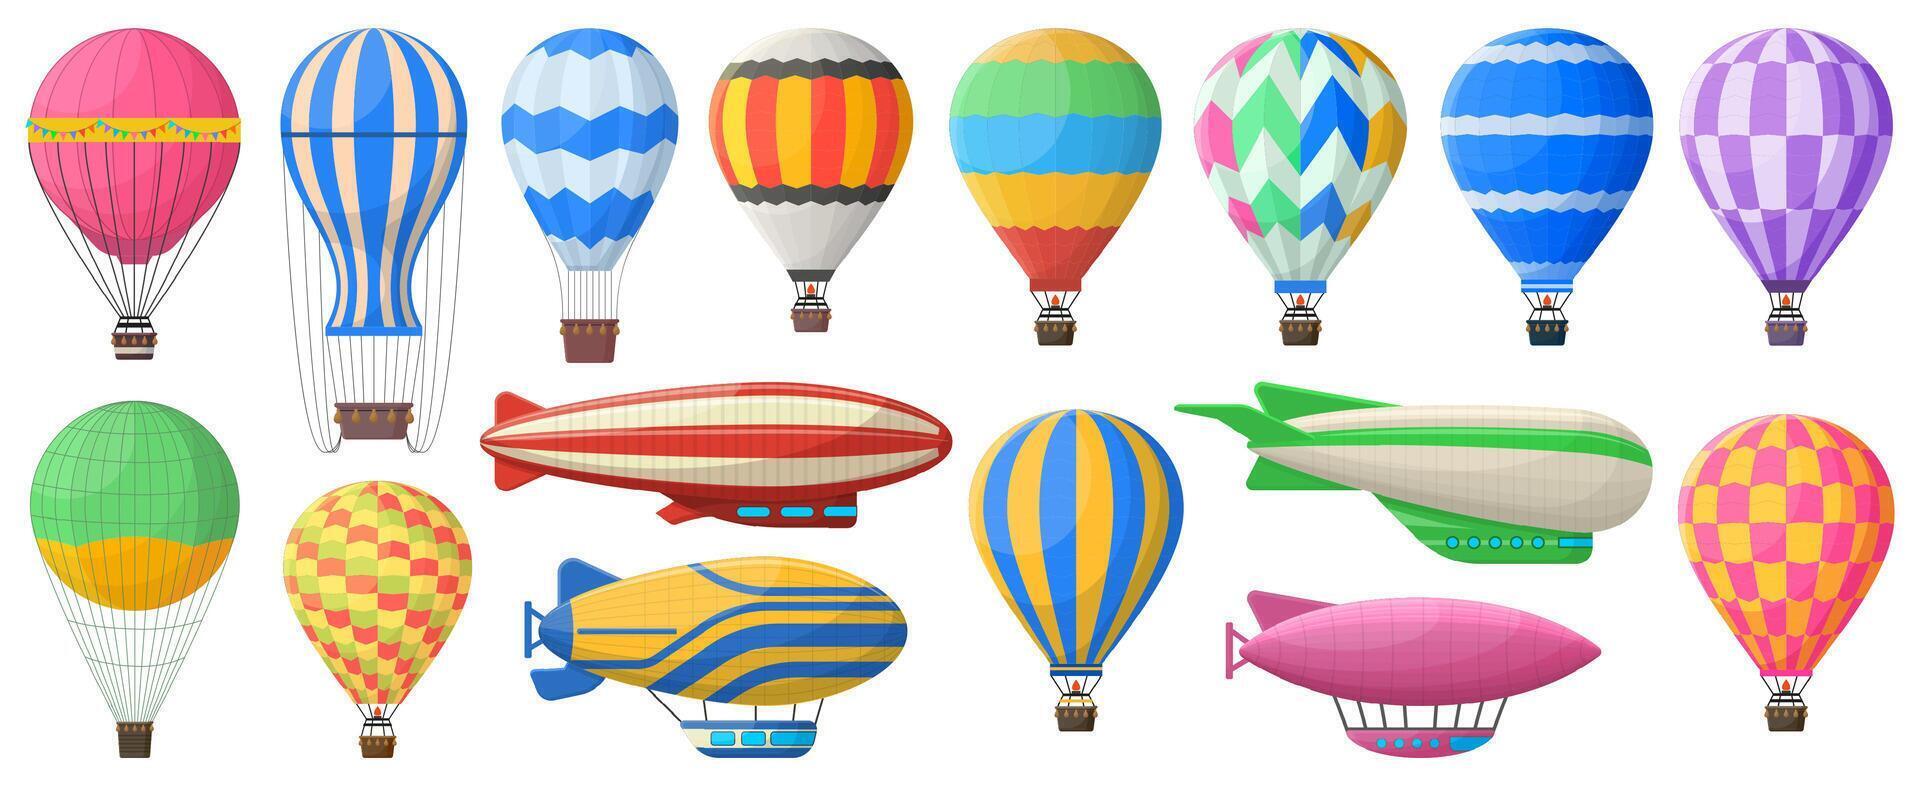 varm luft ballong, flygande årgång aerostat och luftskepp. årgång himmel transport, luft resa flygande aerostat vektor symboler uppsättning. retro luftskepp och varm luft ballong